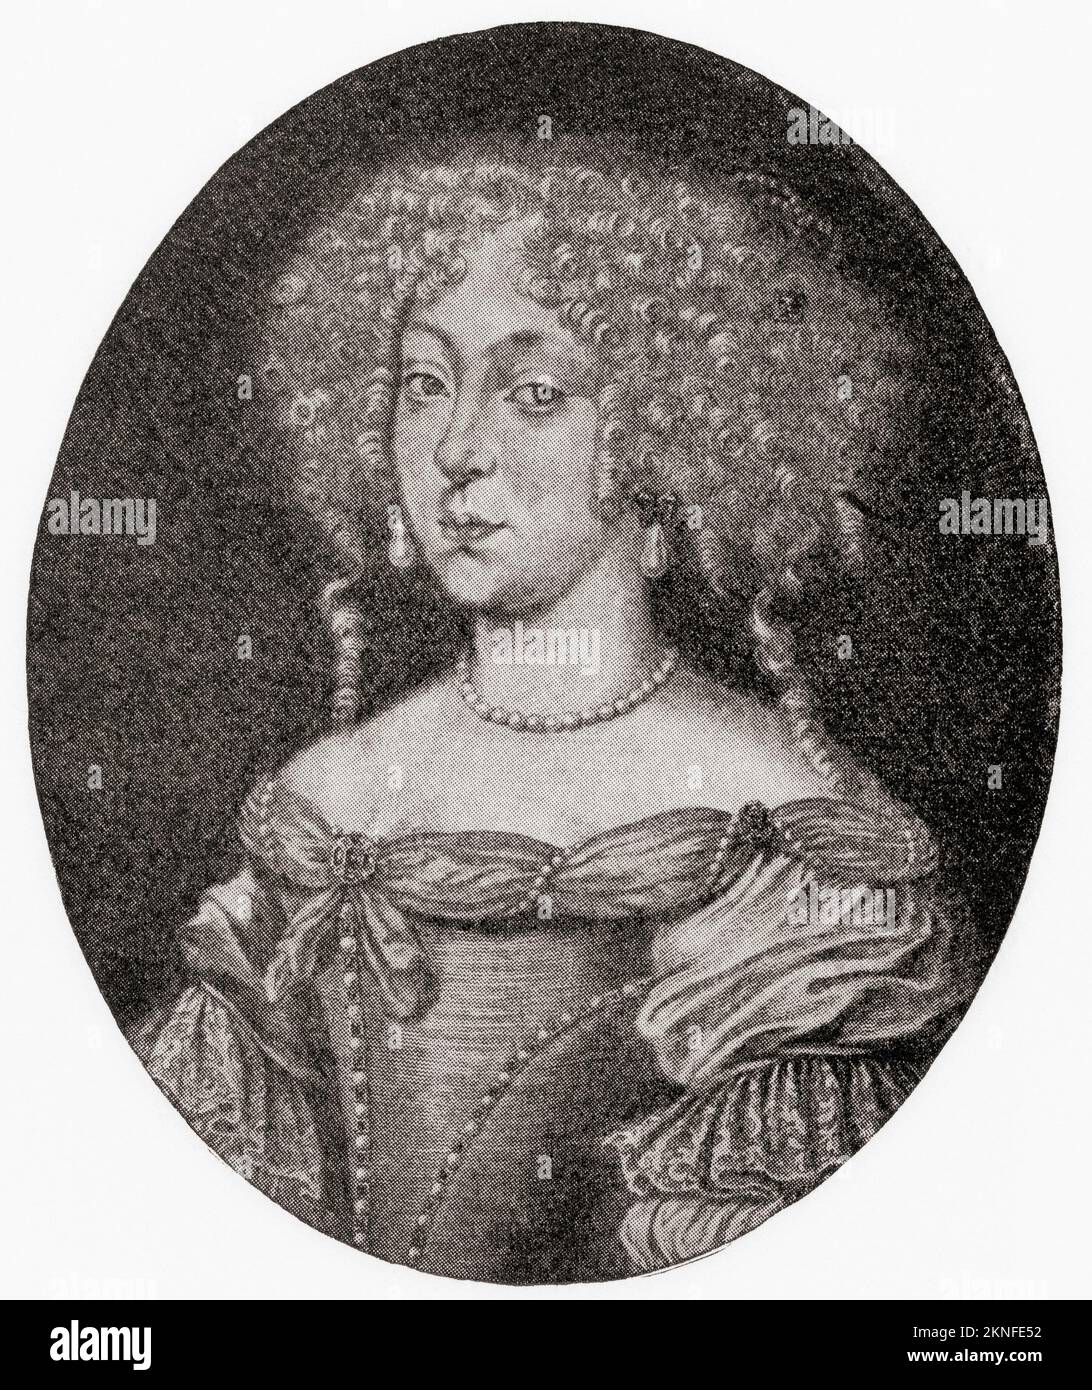 Landgravine Magdalena Sibylla de Hesse-Darmstadt, 1652 – 1712. Regente del Ducado de Württemberg de 1677 a 1693, y un destacado compositor alemán de himnos barrocos. De Modos y Maneras, publicado en 1935. Foto de stock